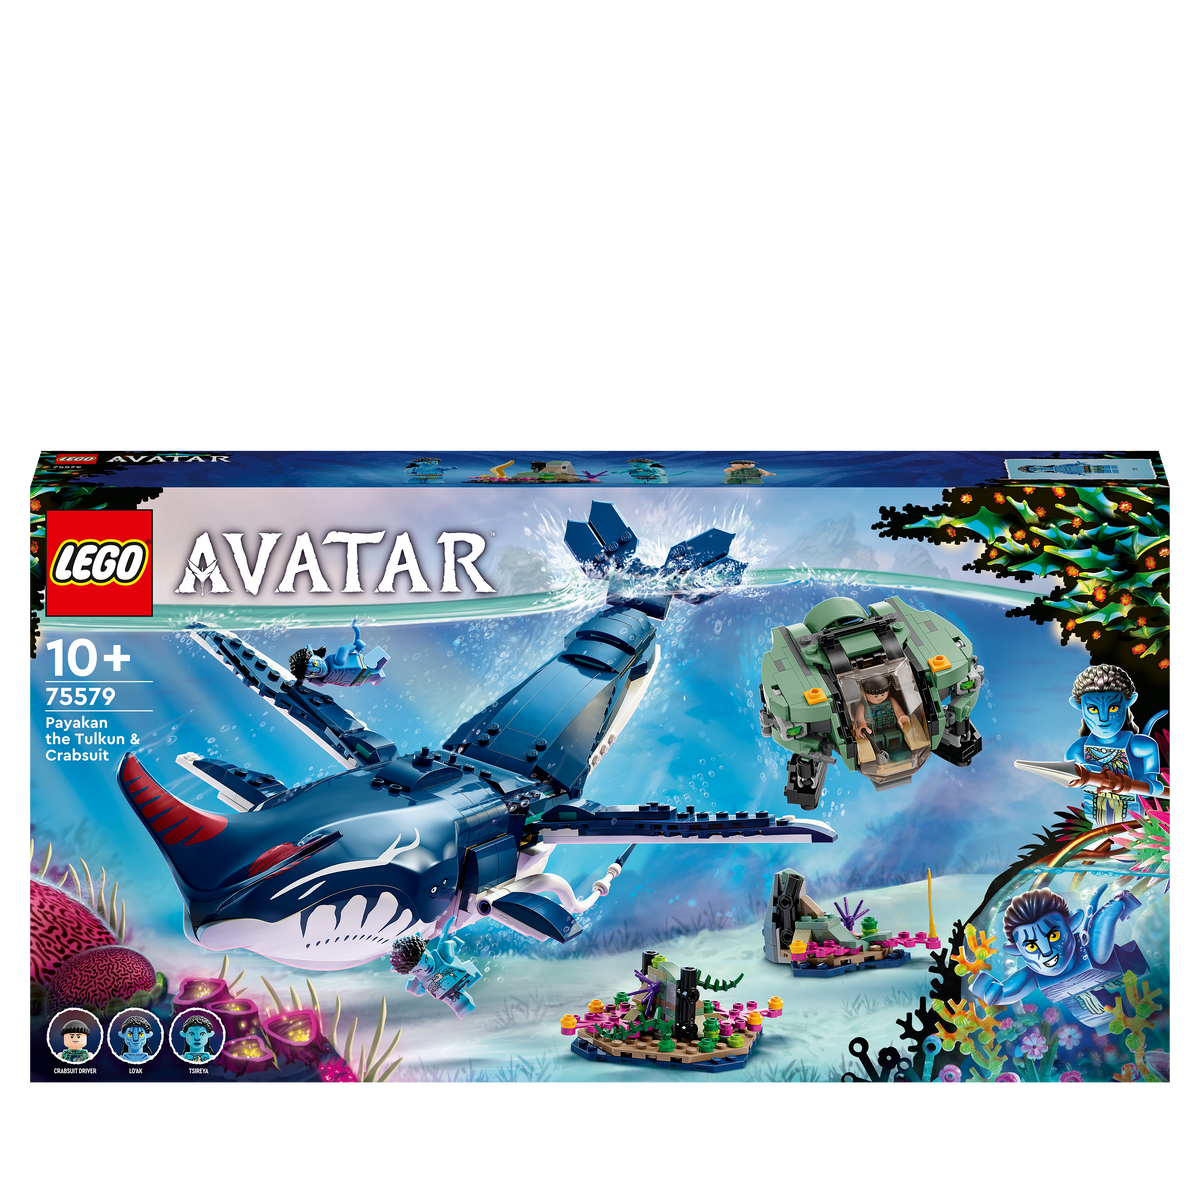 LEGO 75579 PAYAKAN LEGO KRABBENANZUG UND TULKUN Avatar DER